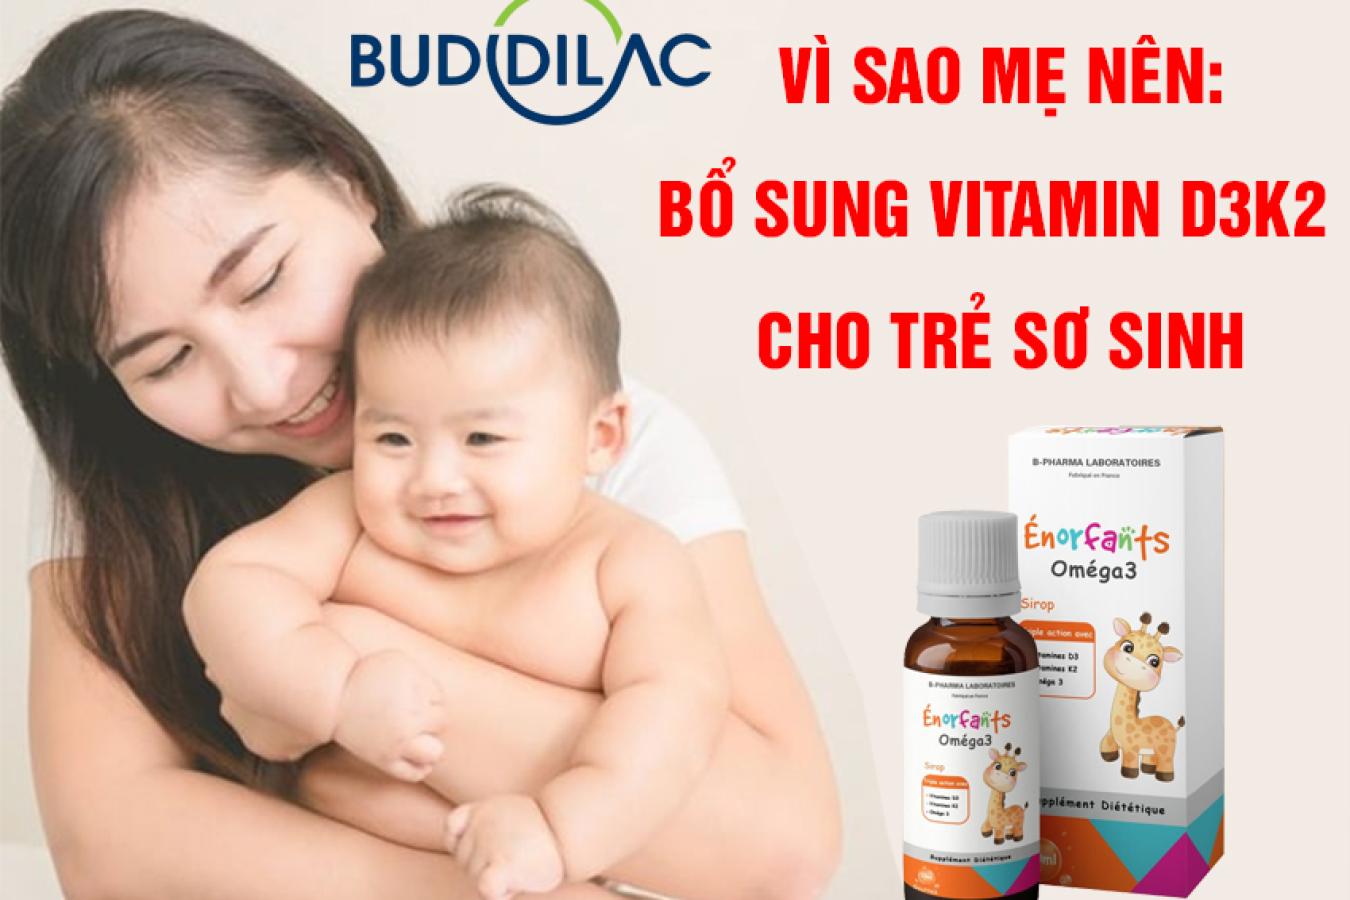 Vì sao mẹ nên bổ sung vitamin D3k2 cho trẻ sơ sinh